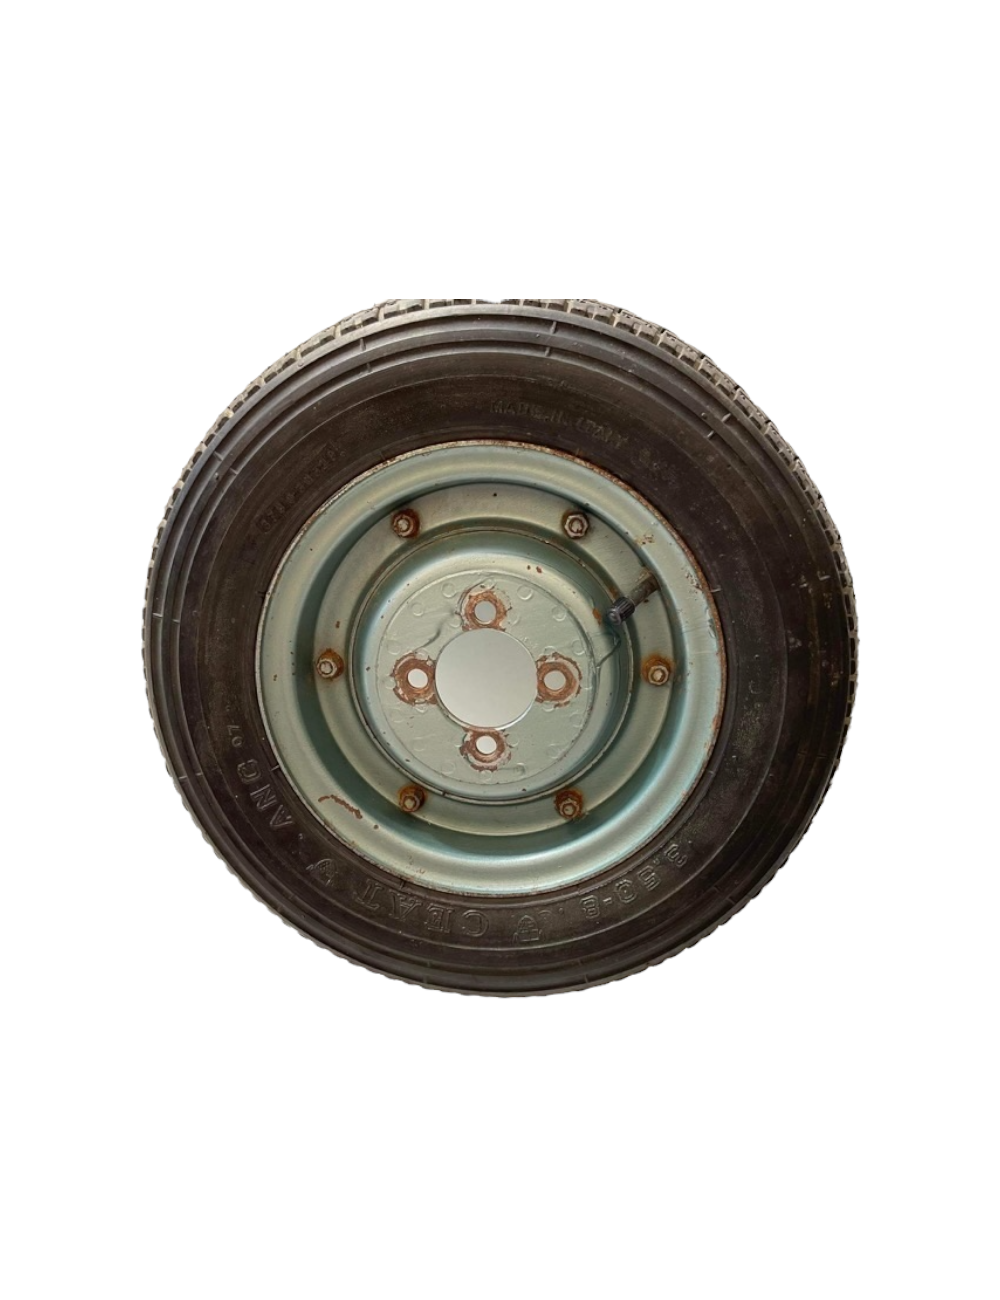 Cerchio Vespa anni 60. Completo di pneumatico